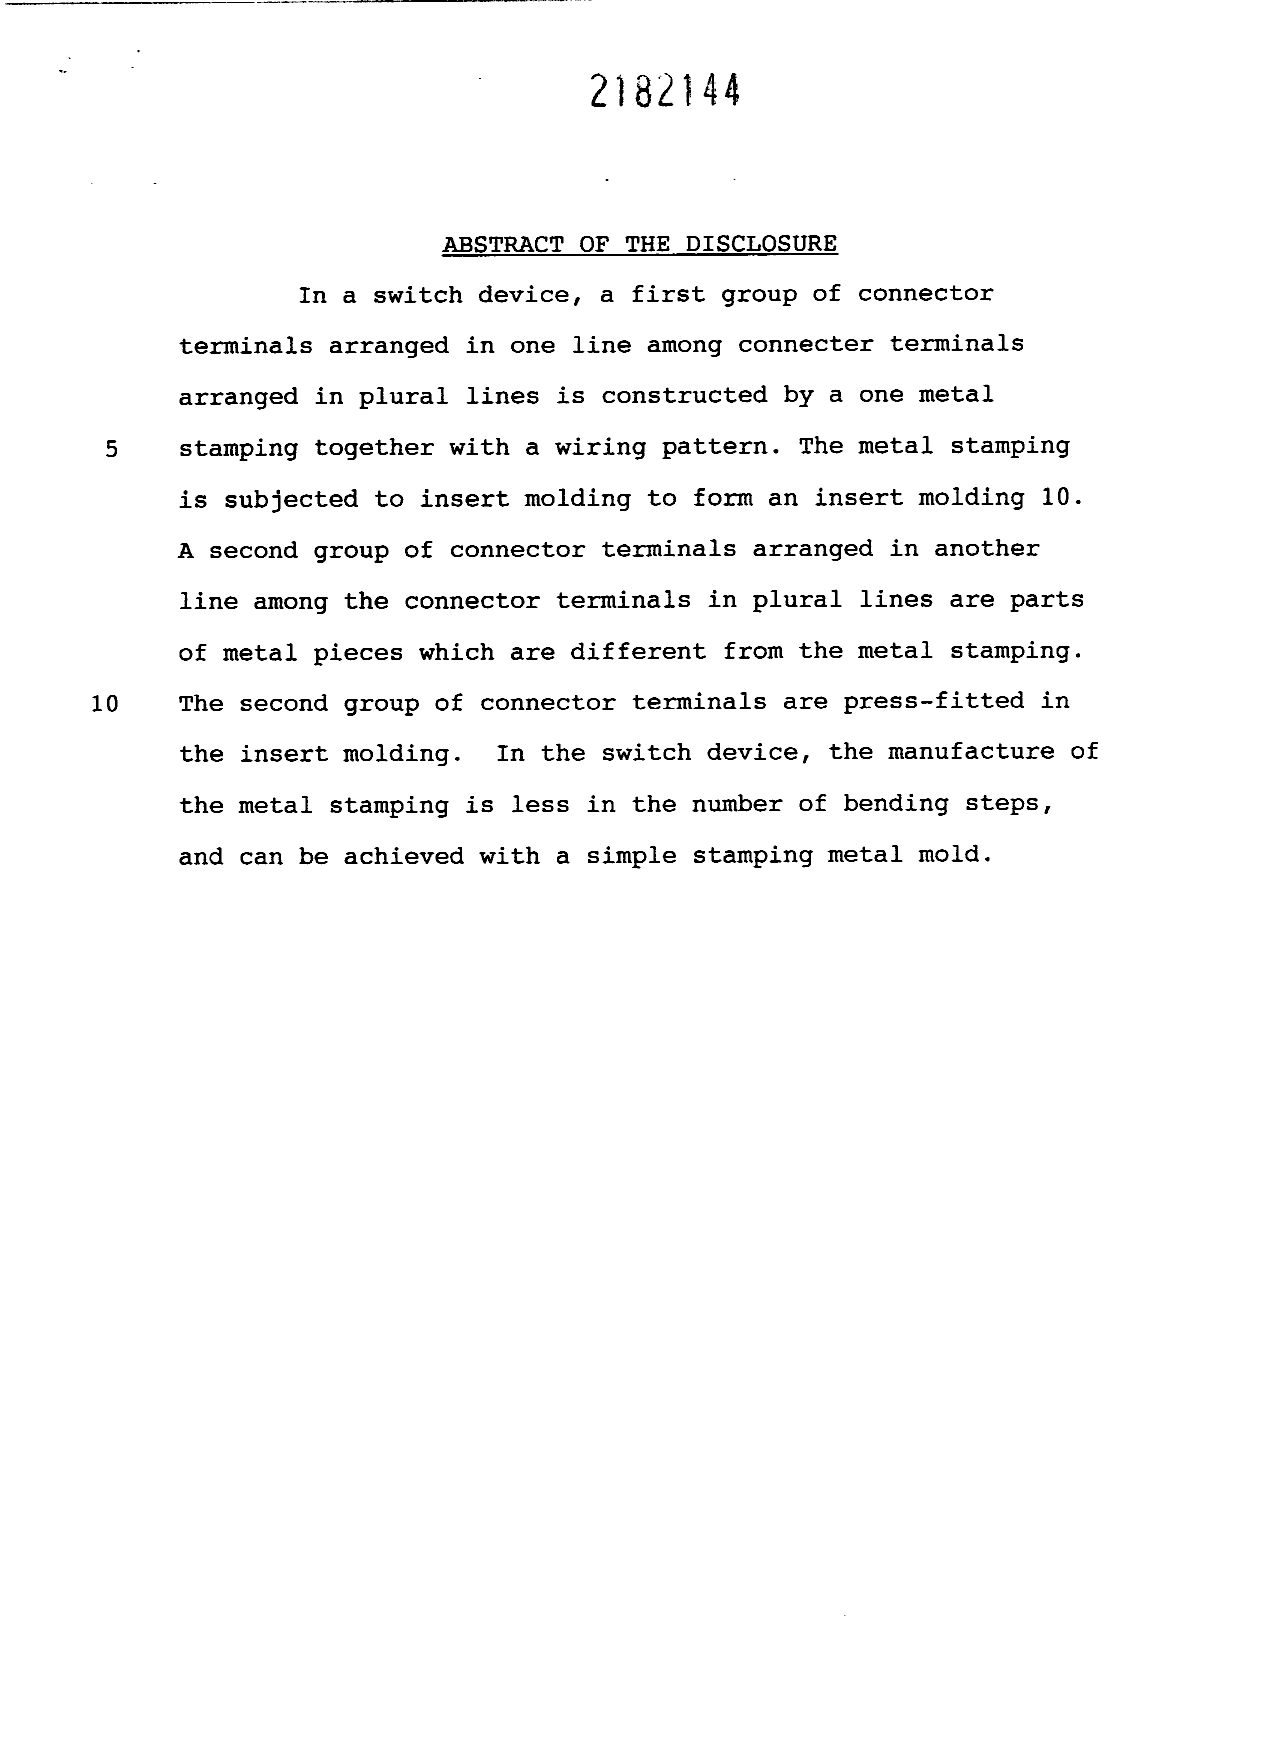 Document de brevet canadien 2182144. Abrégé 19961101. Image 1 de 1